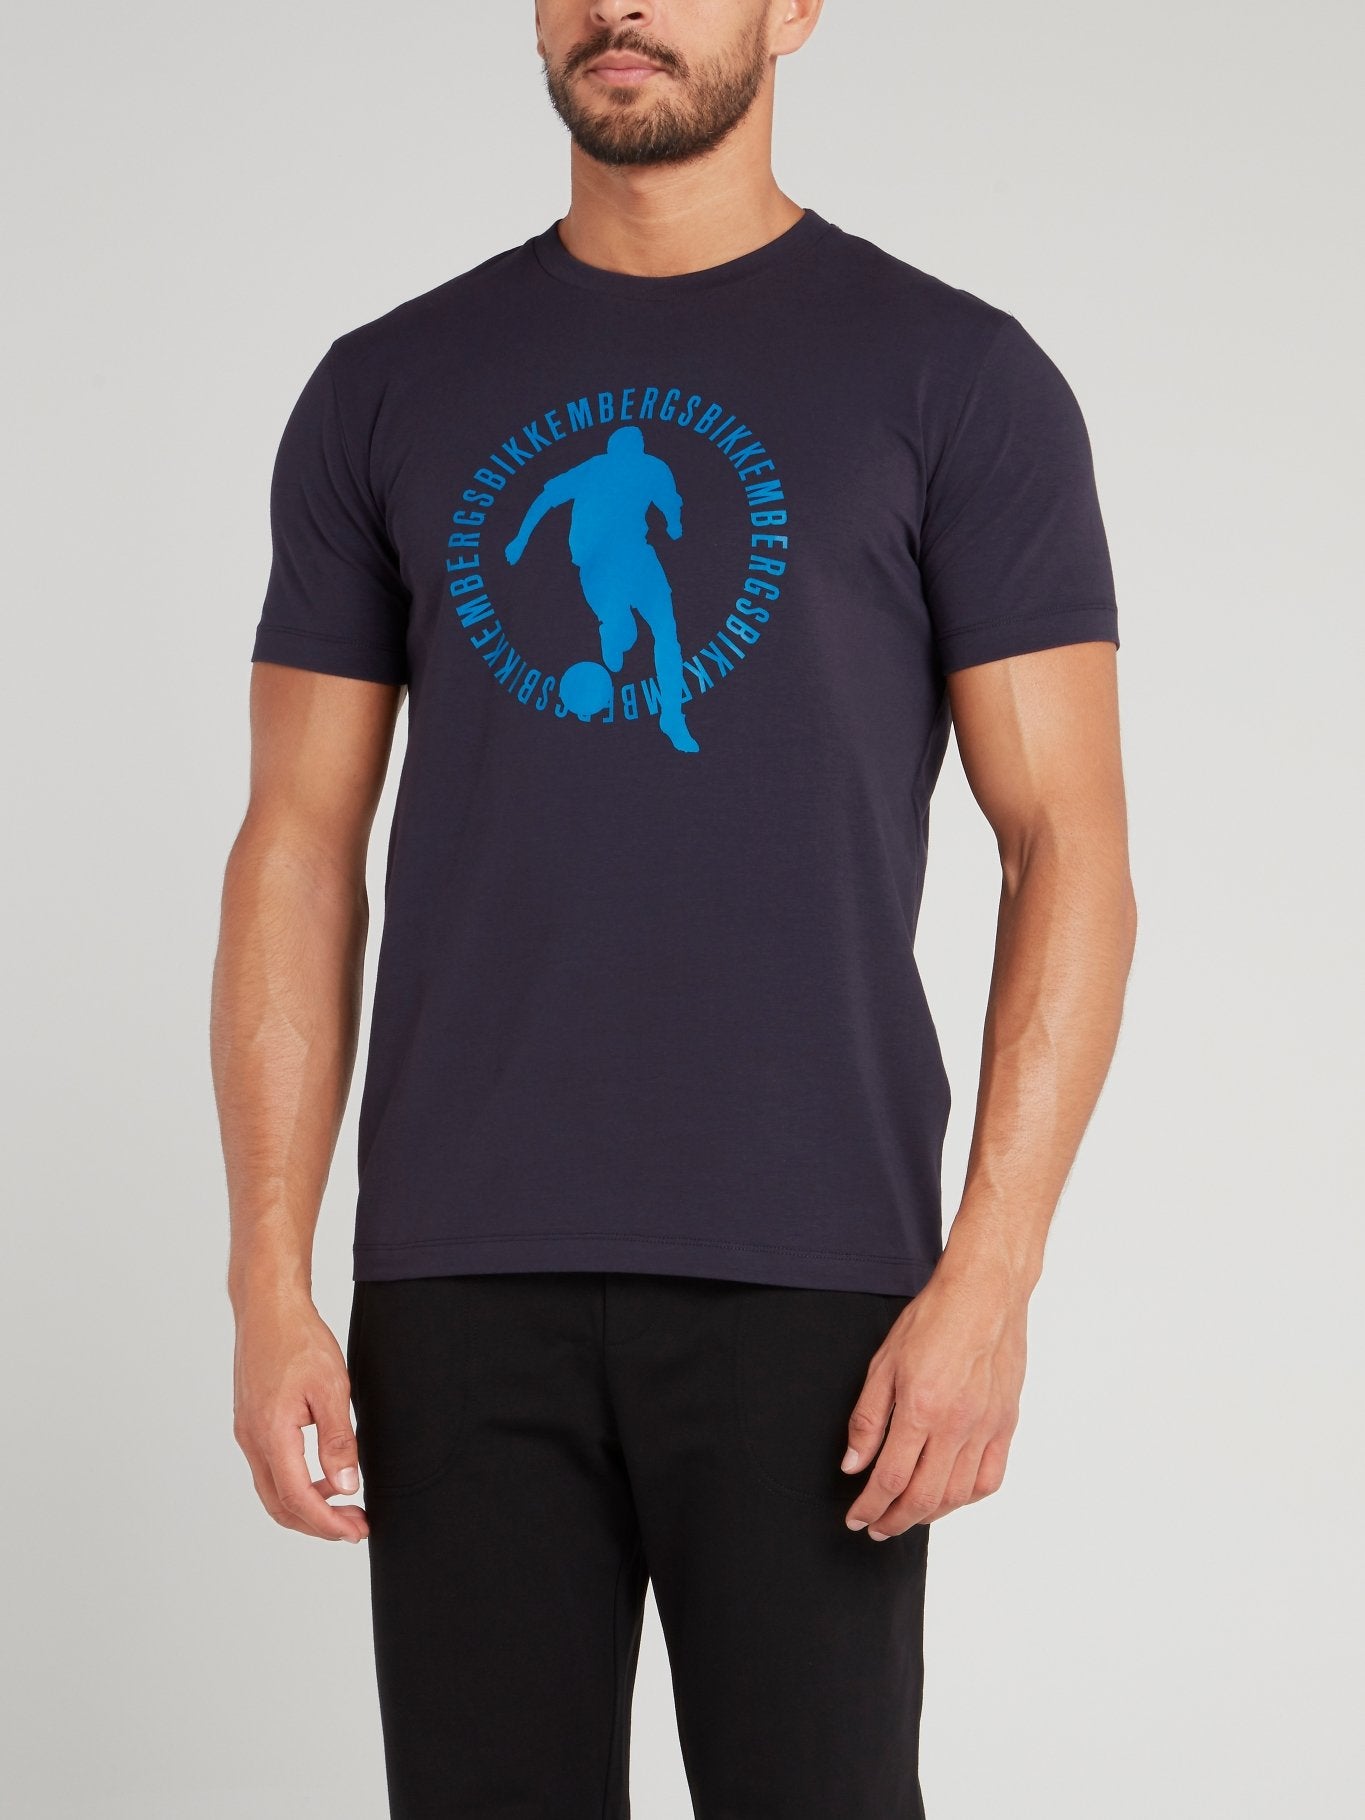 Темно-синяя футболка с логотипом Sport